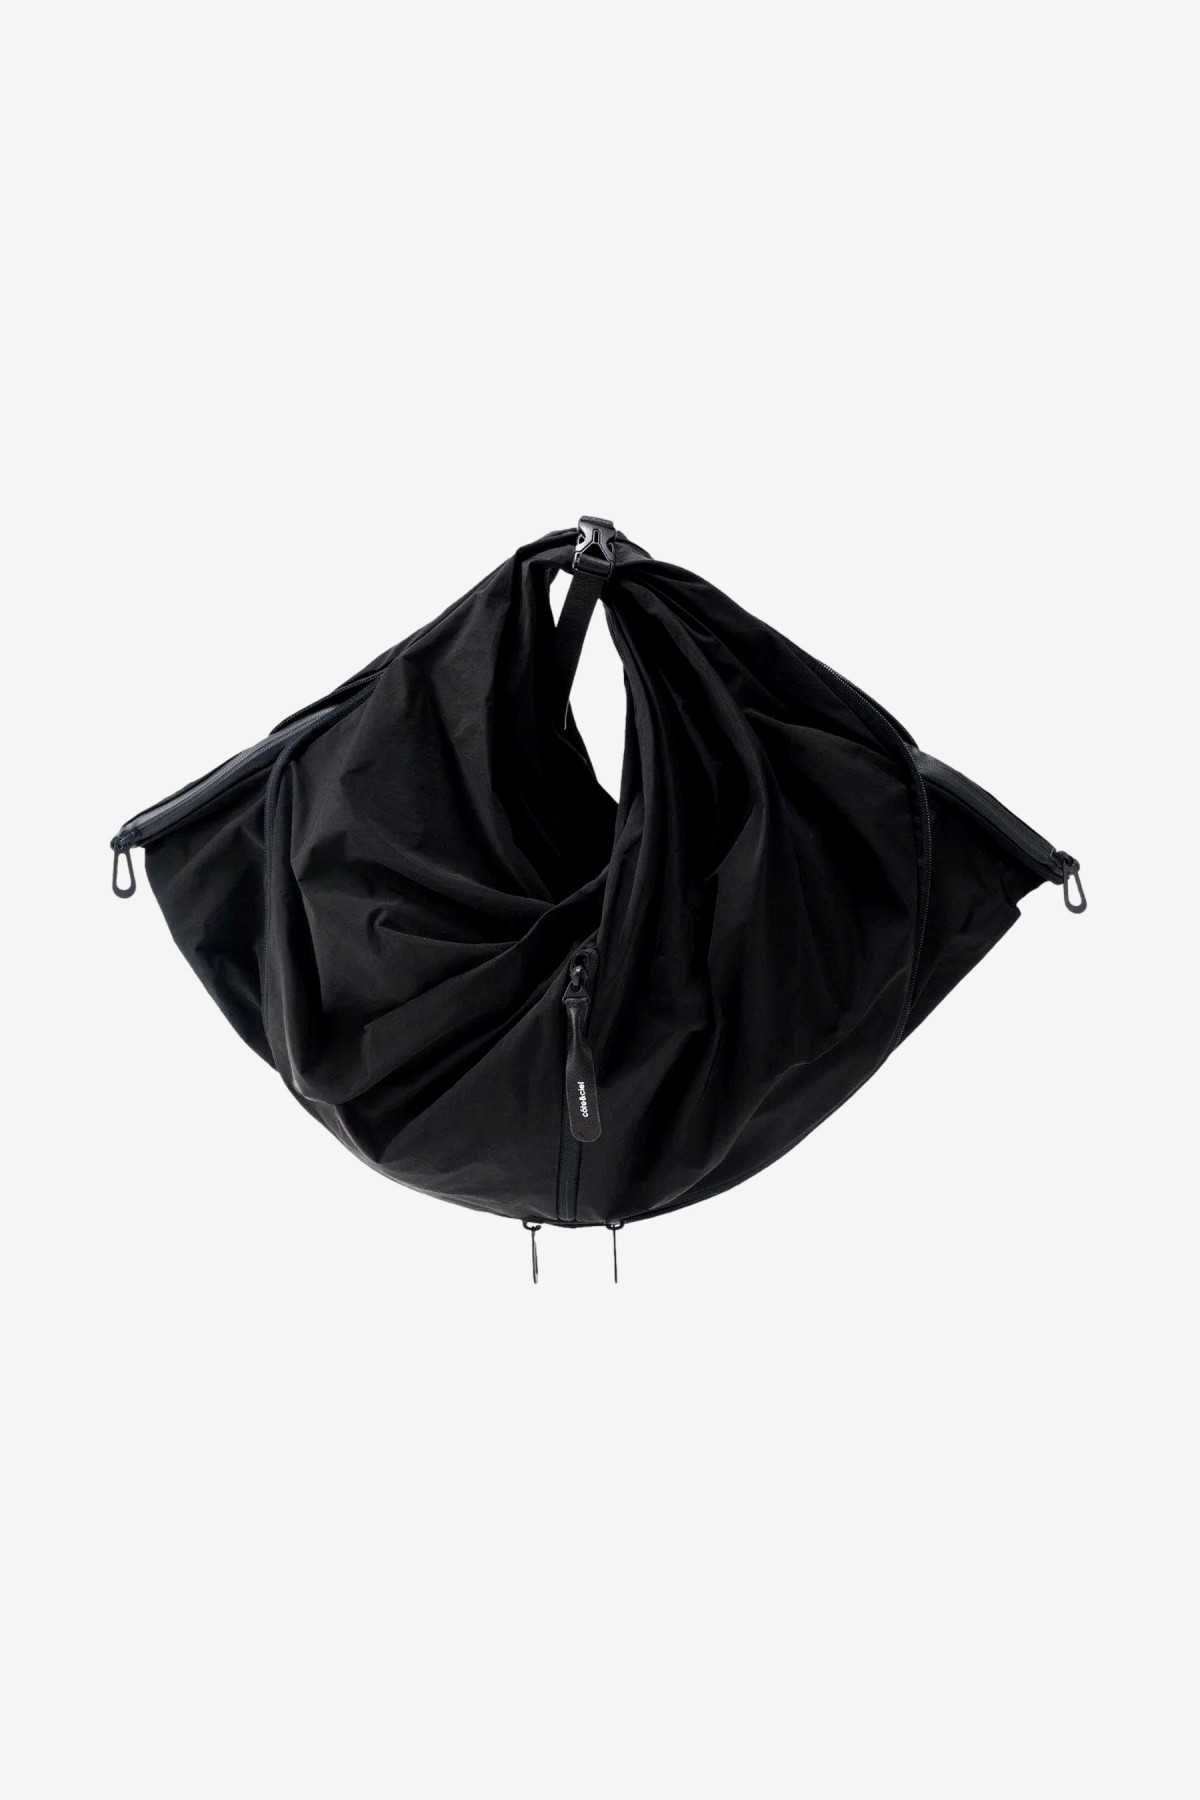 Cote & Ciel Aóos Shoulder Bag L in Black